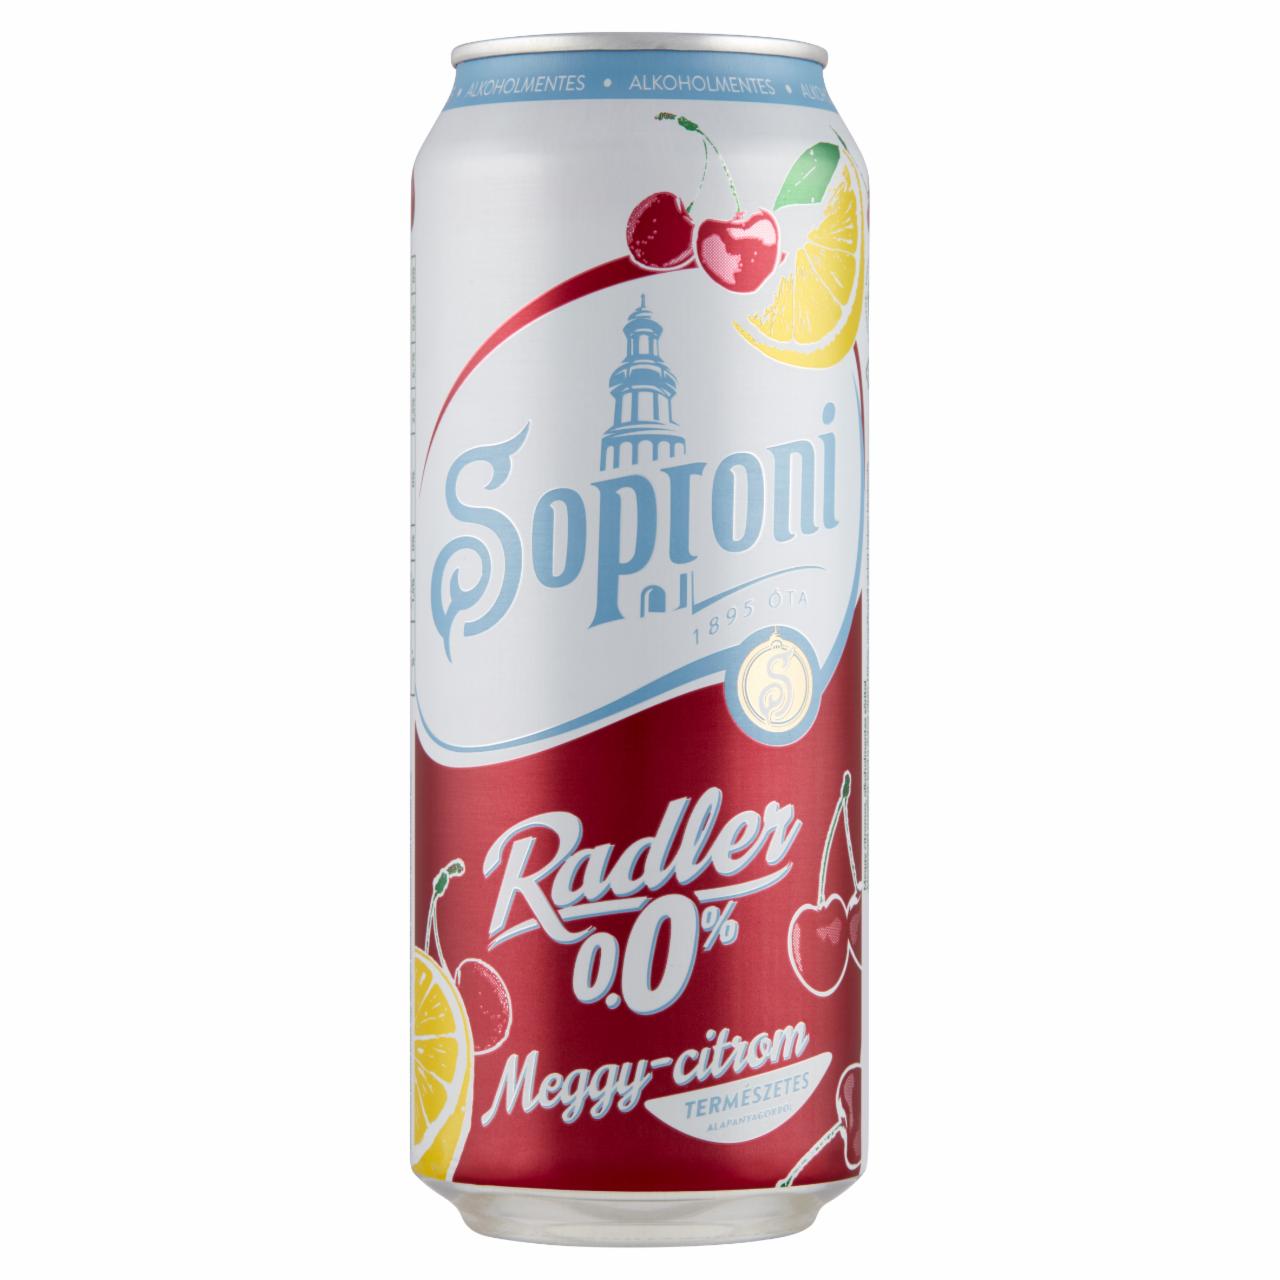 Képek - Soproni Radler meggy-citromos alkoholmentes sörital 0,5 l 